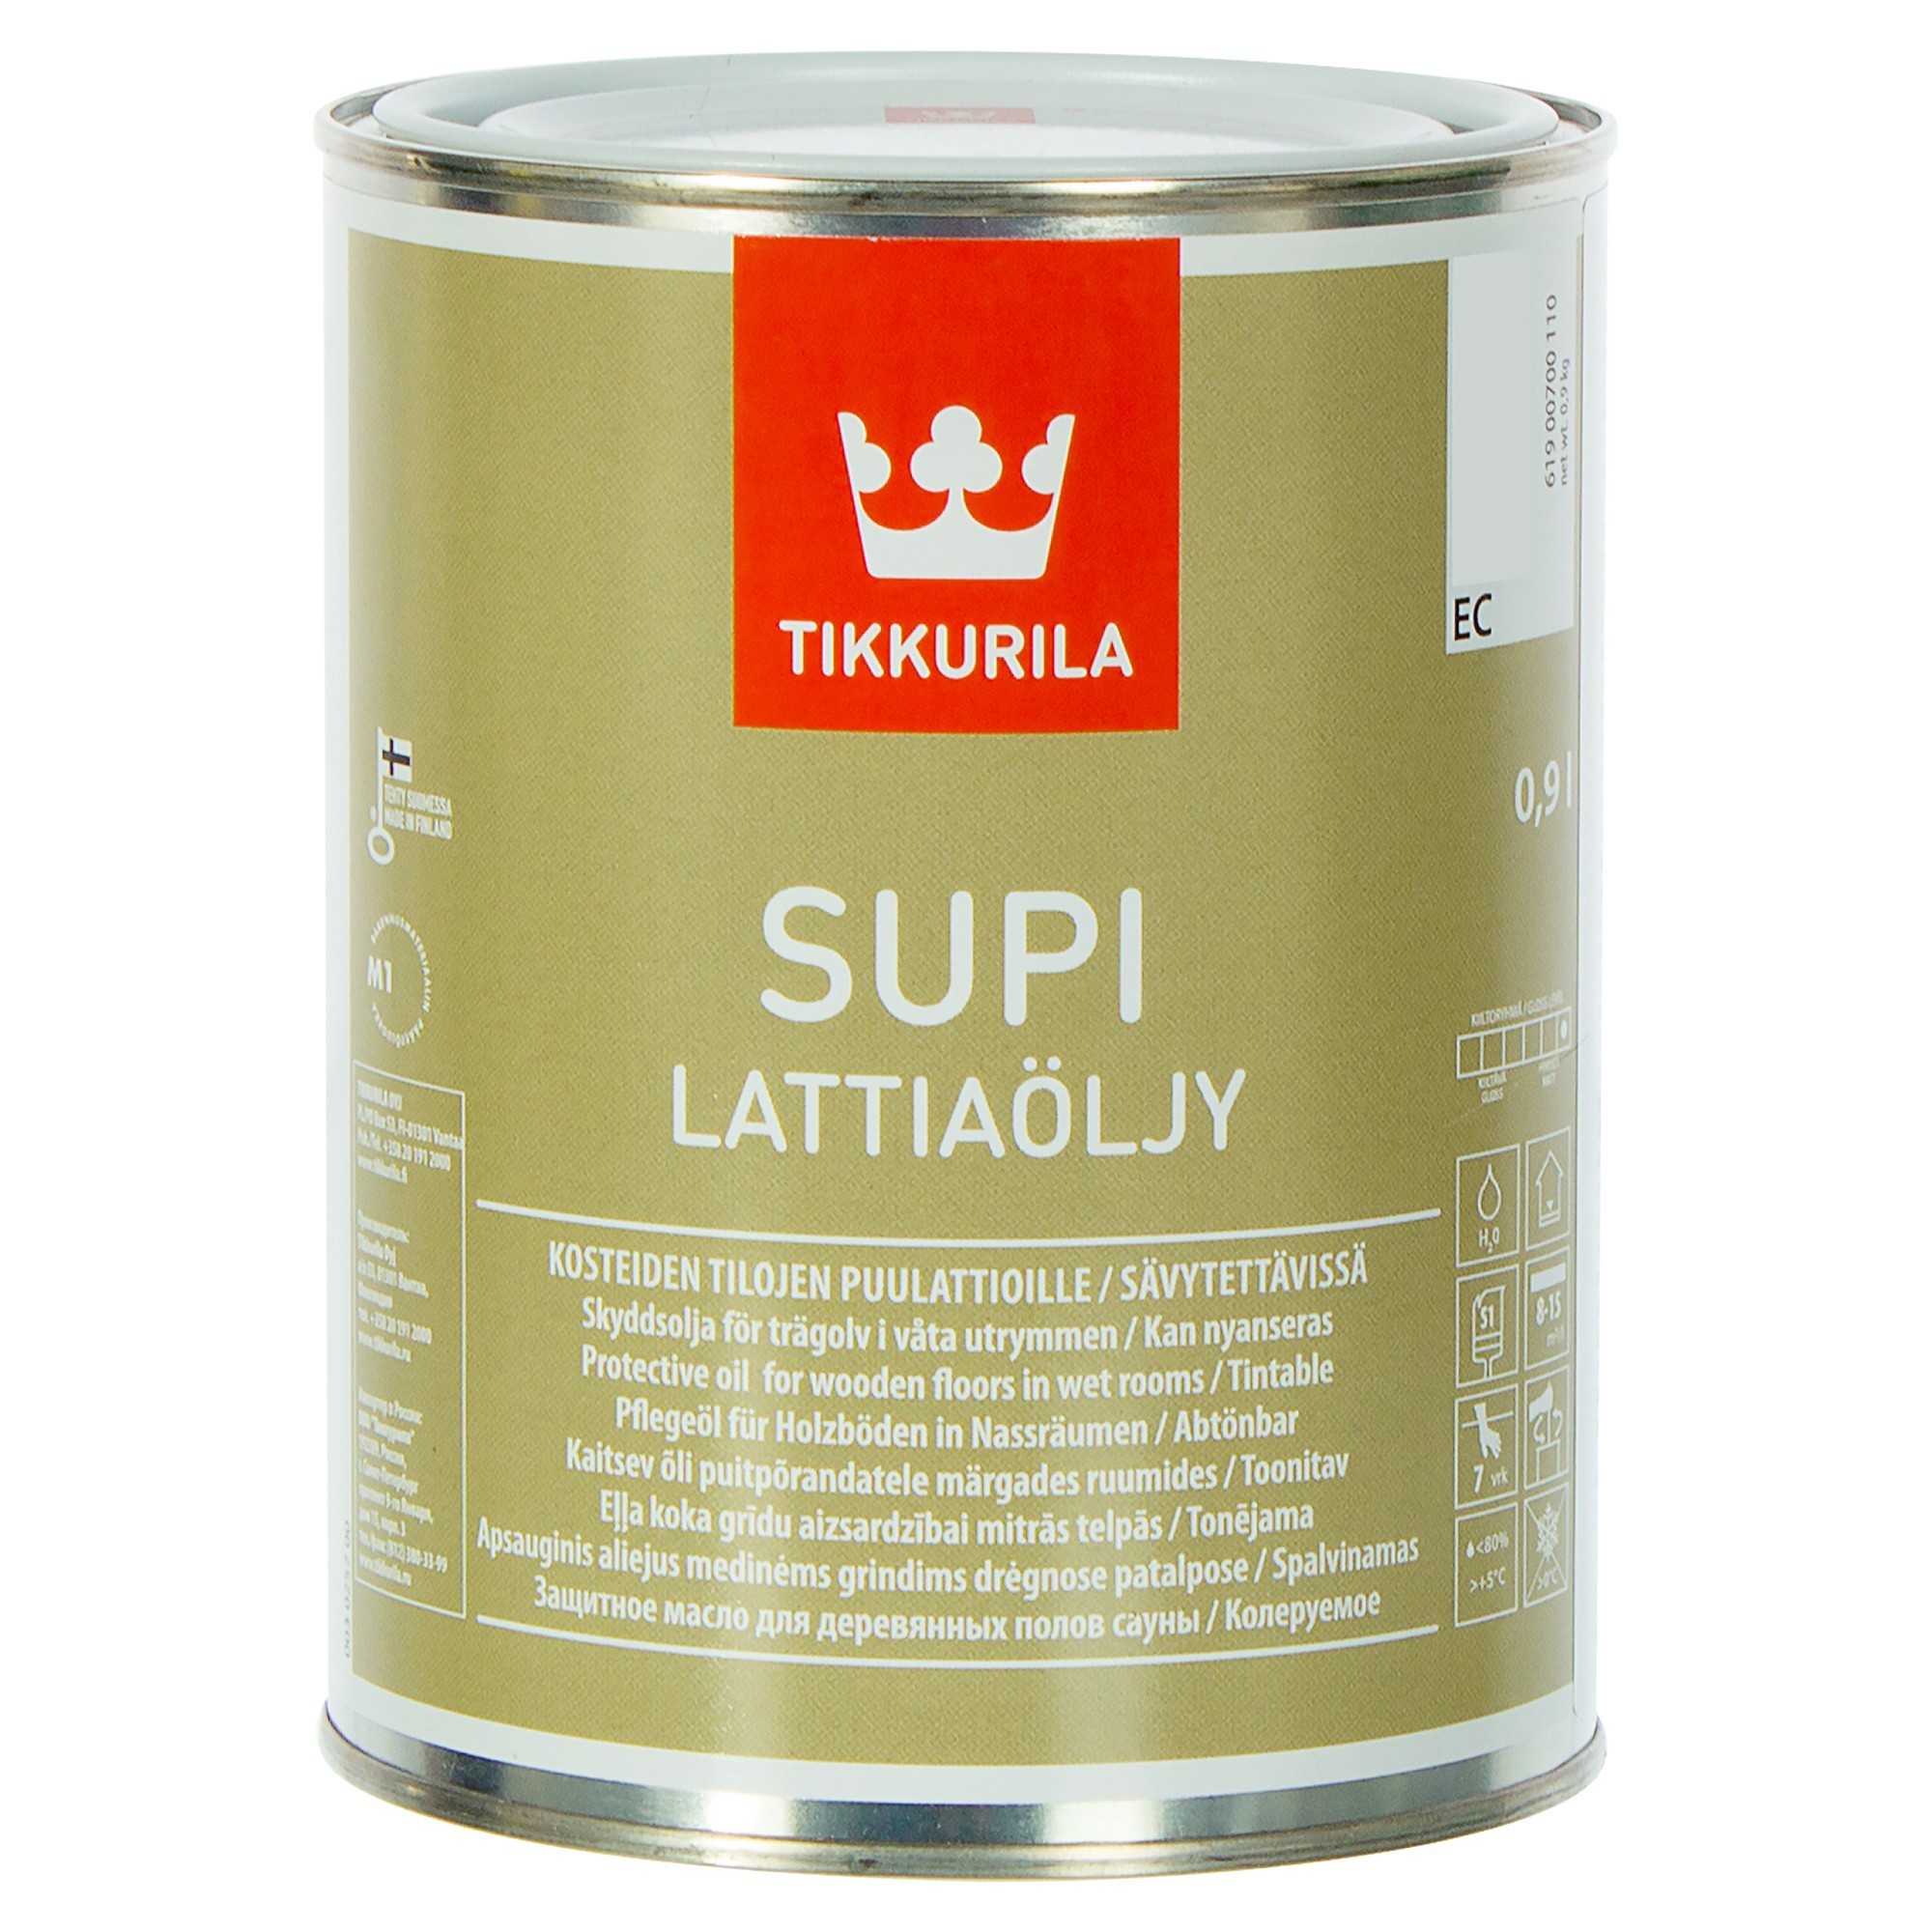 Масло для дерева леруа мерлен. Масло для пола Tikkurila Supi LATTIAOLJY. Tikkurila Supi LATTIAOLJY. Tikkurila Supi для пола в бане. Тиккурила супи Латиаоли (Supi LATTIAOLJY) масло для пола (0,9л).